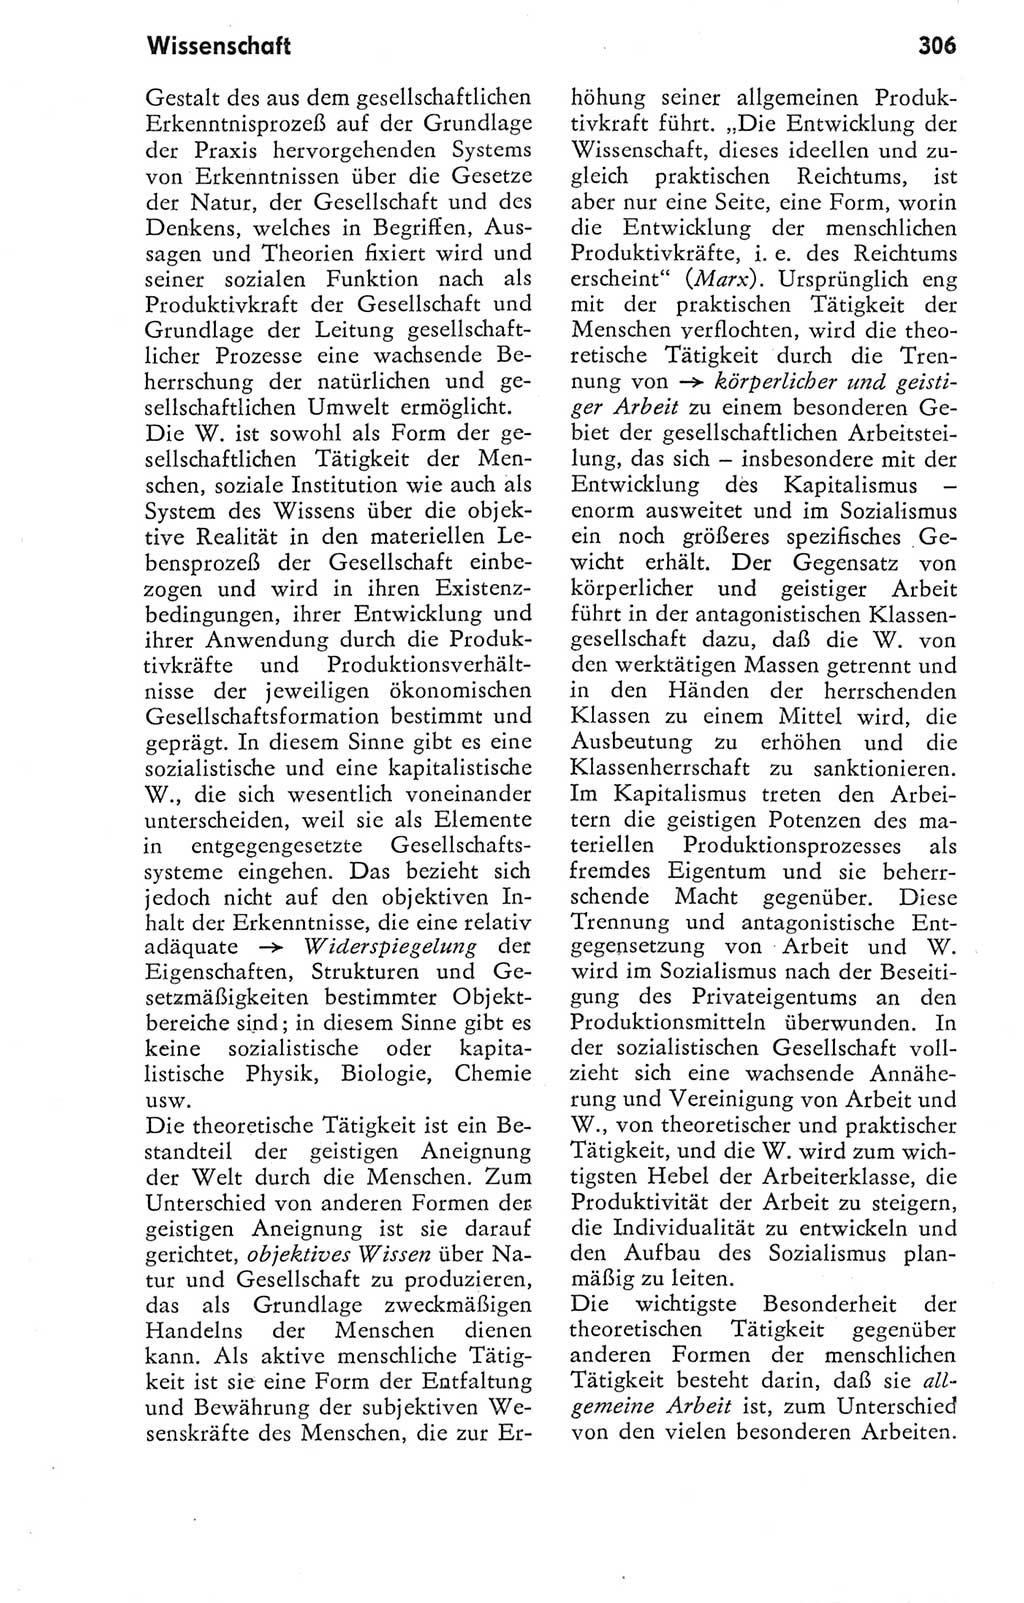 Kleines Wörterbuch der marxistisch-leninistischen Philosophie [Deutsche Demokratische Republik (DDR)] 1974, Seite 306 (Kl. Wb. ML Phil. DDR 1974, S. 306)